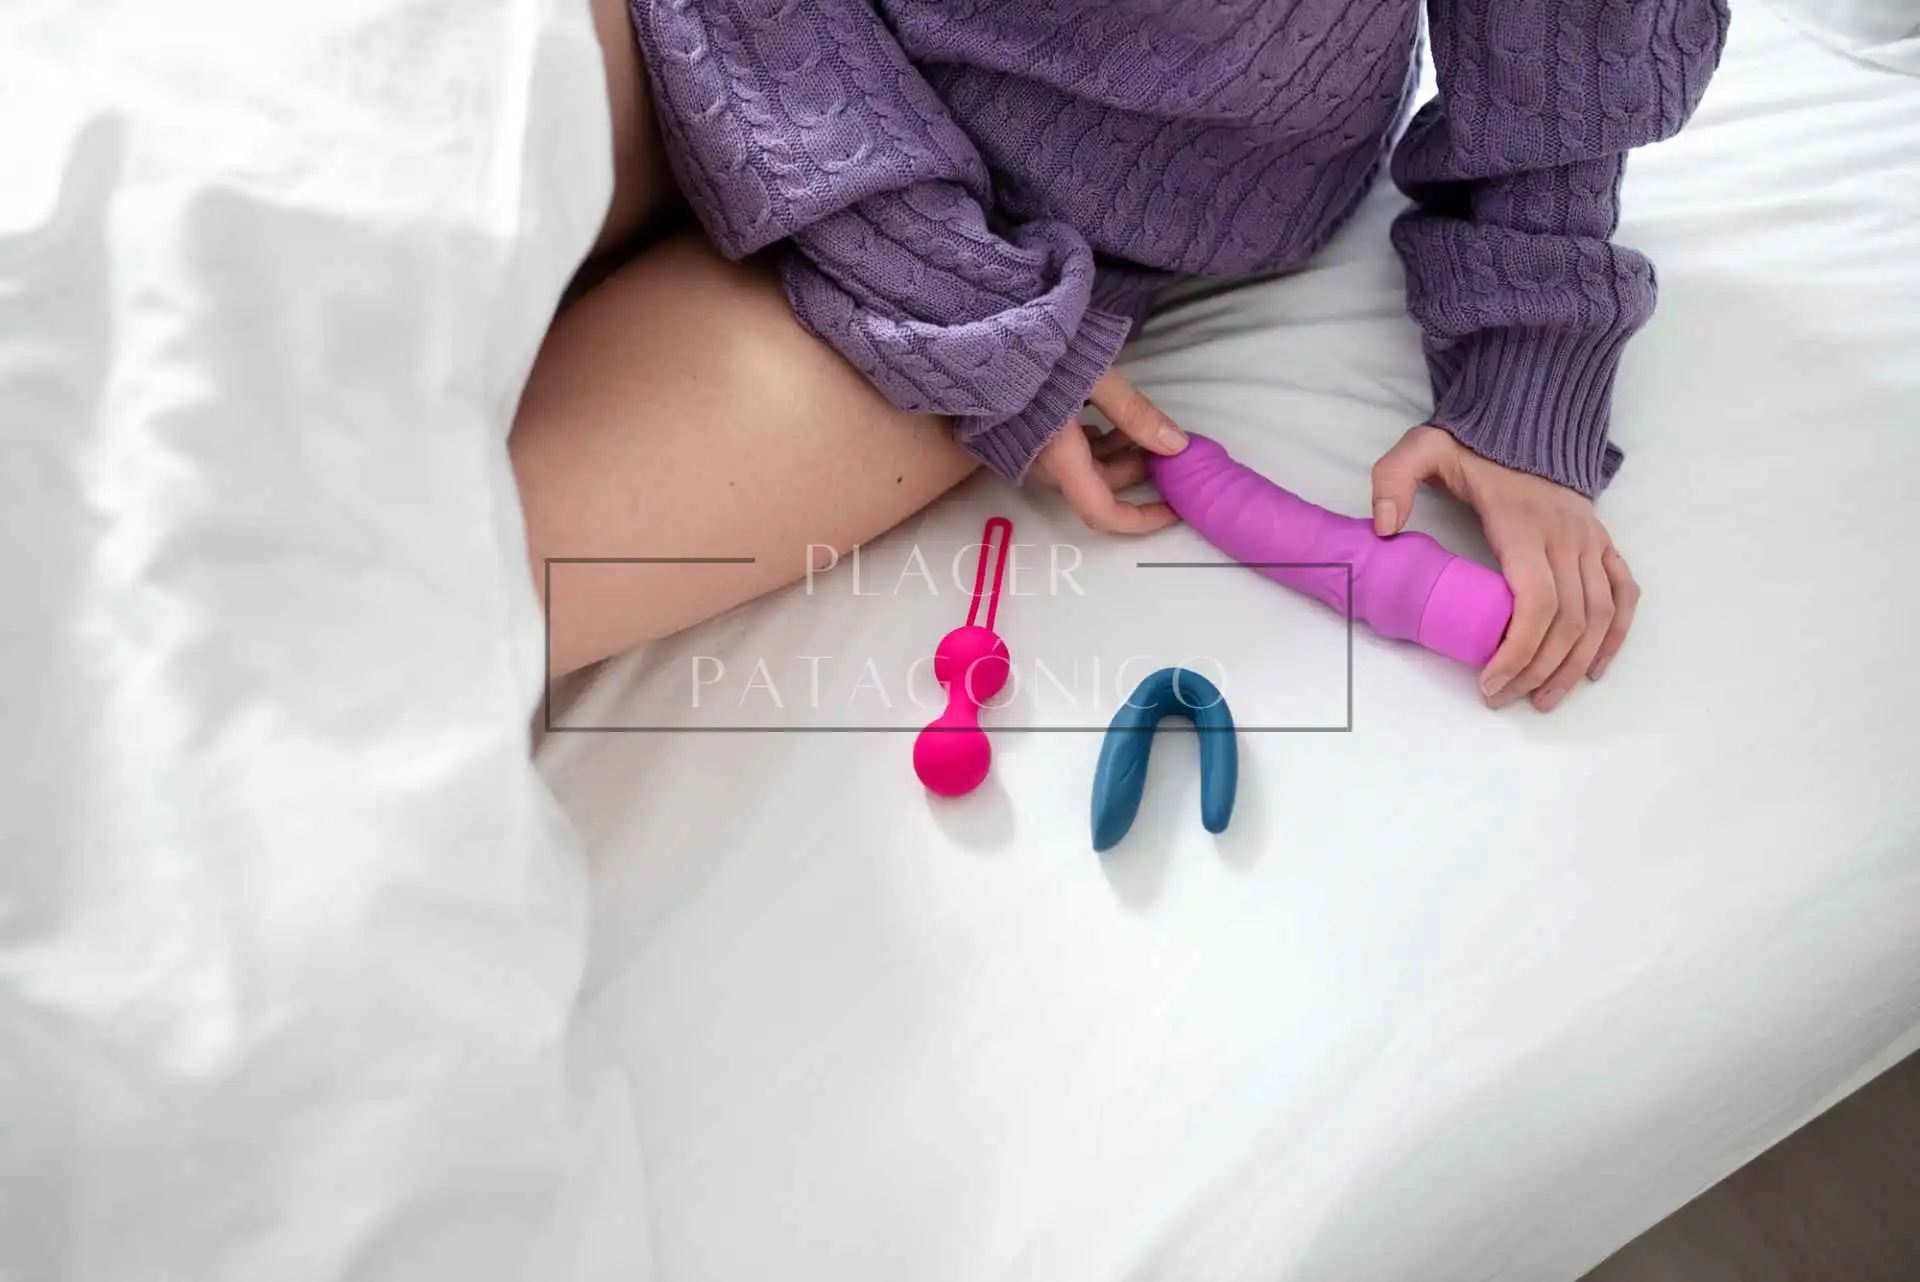 Mujer sentada en la cama sosteniendo un juguete sexual